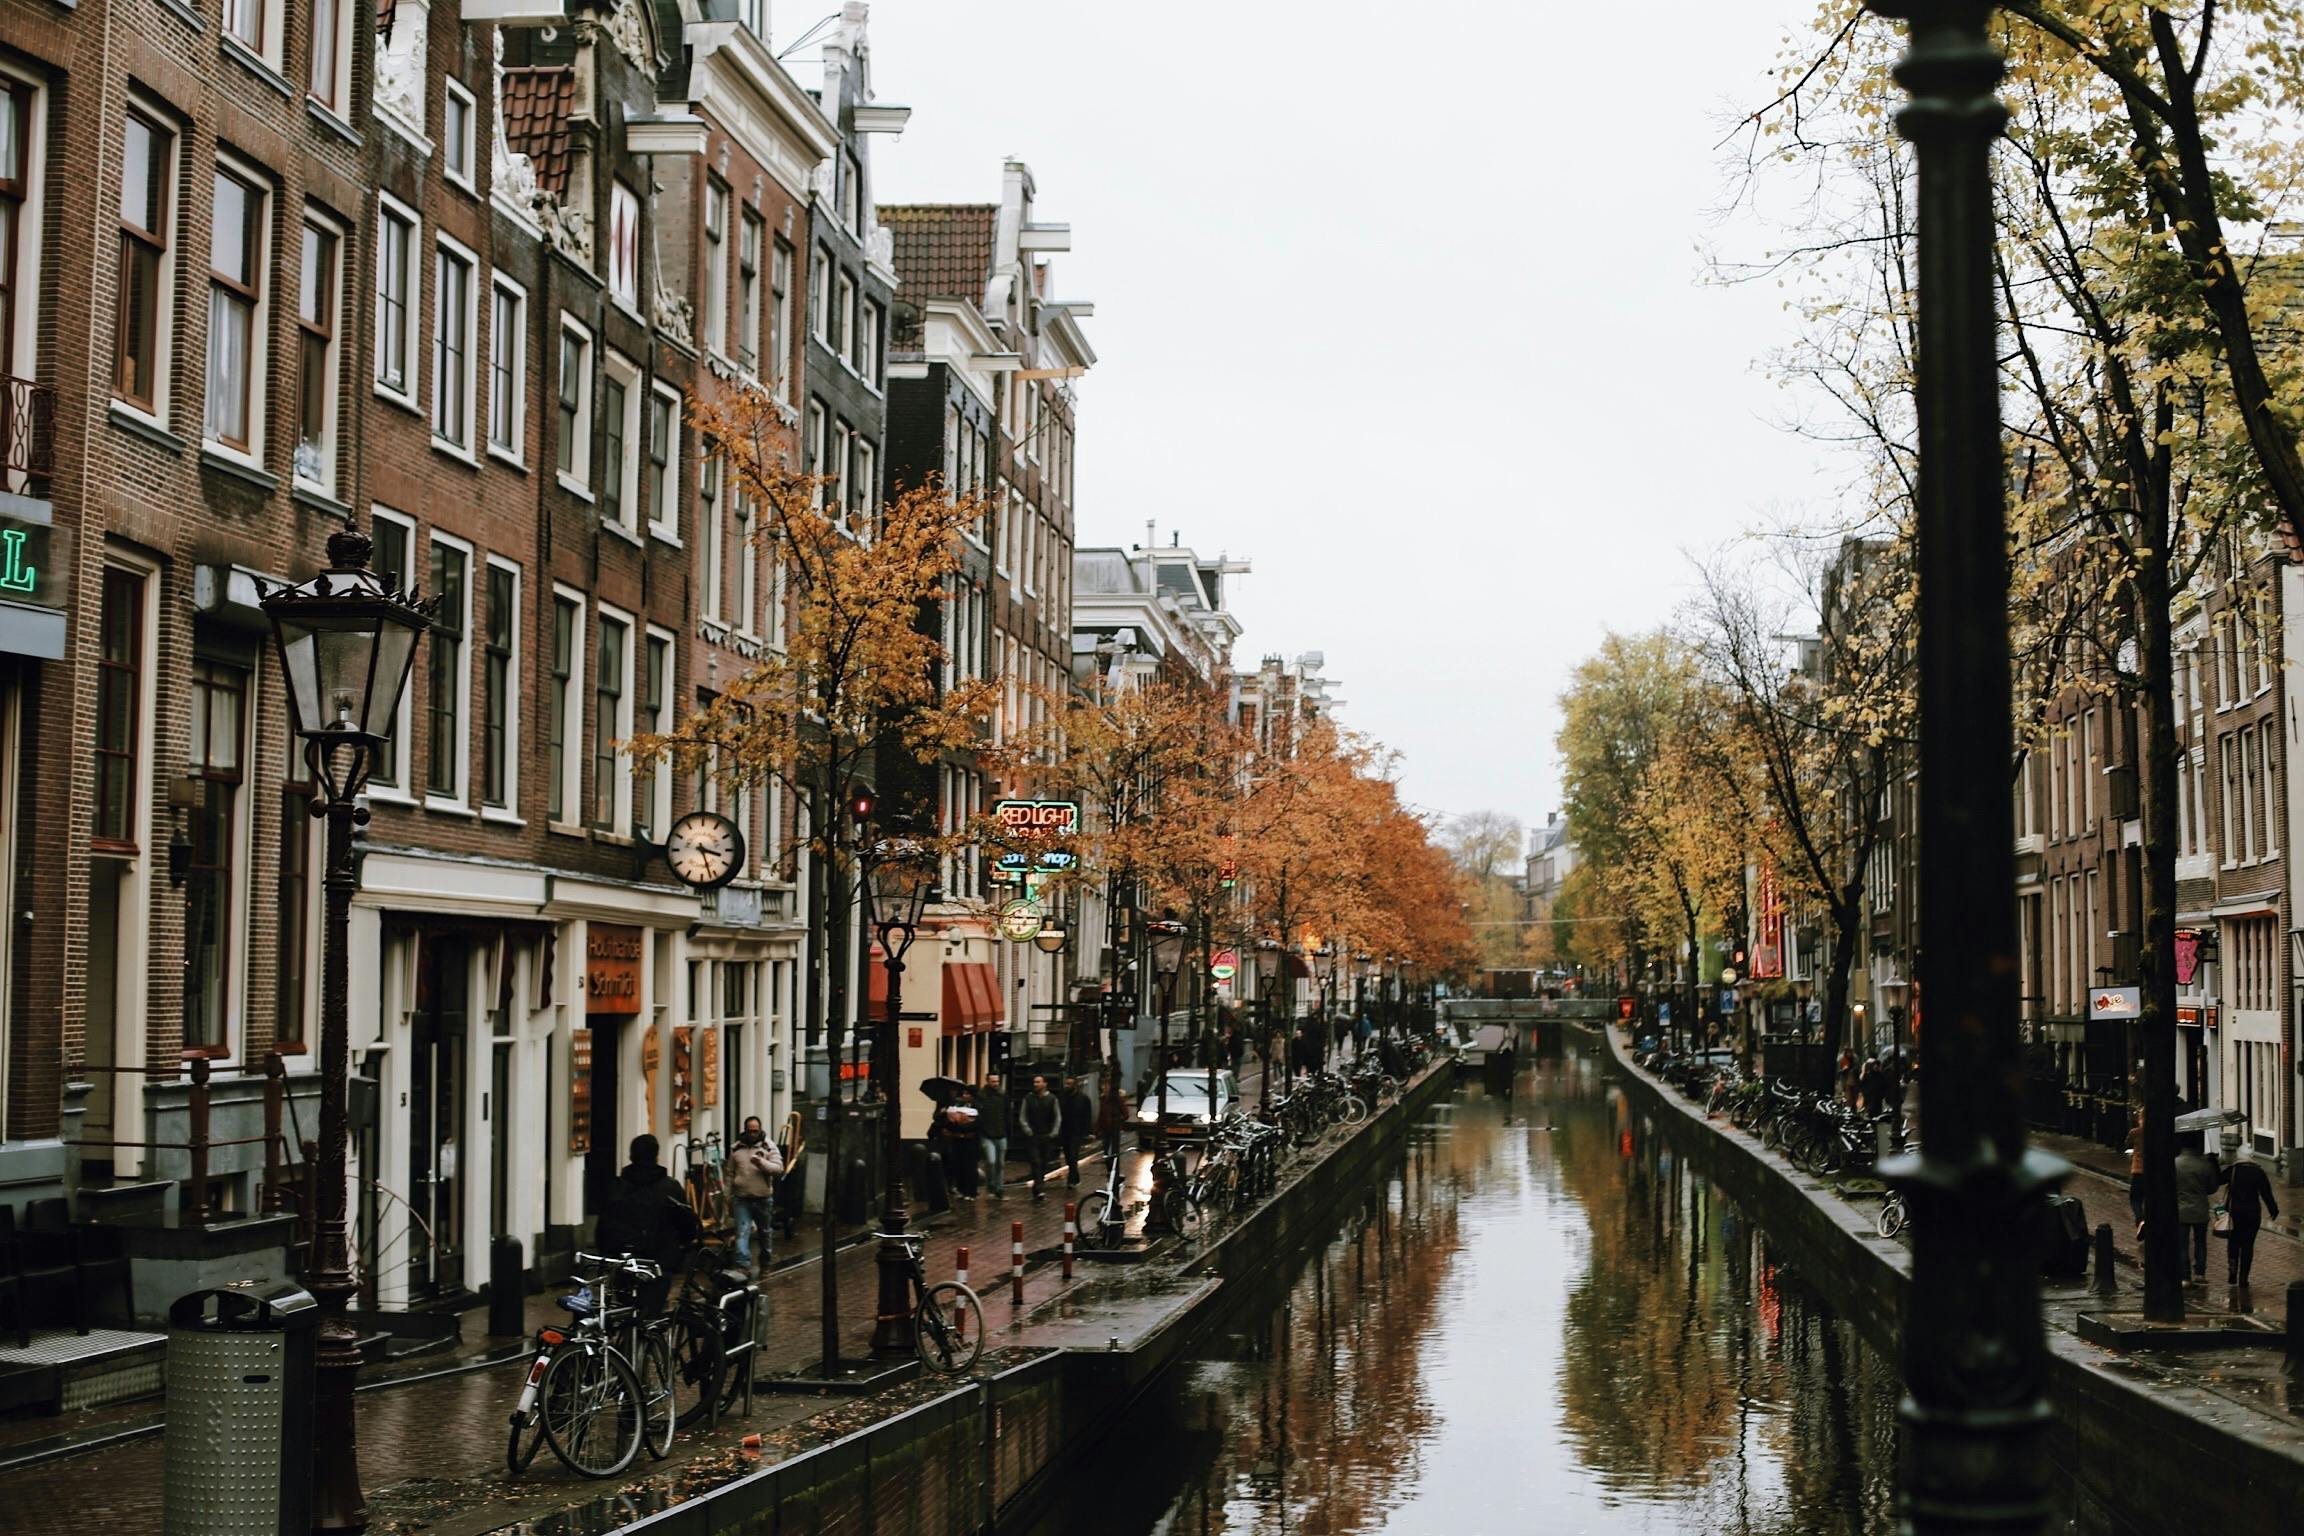 Storia del tour privato a piedi del centro di Amsterdam